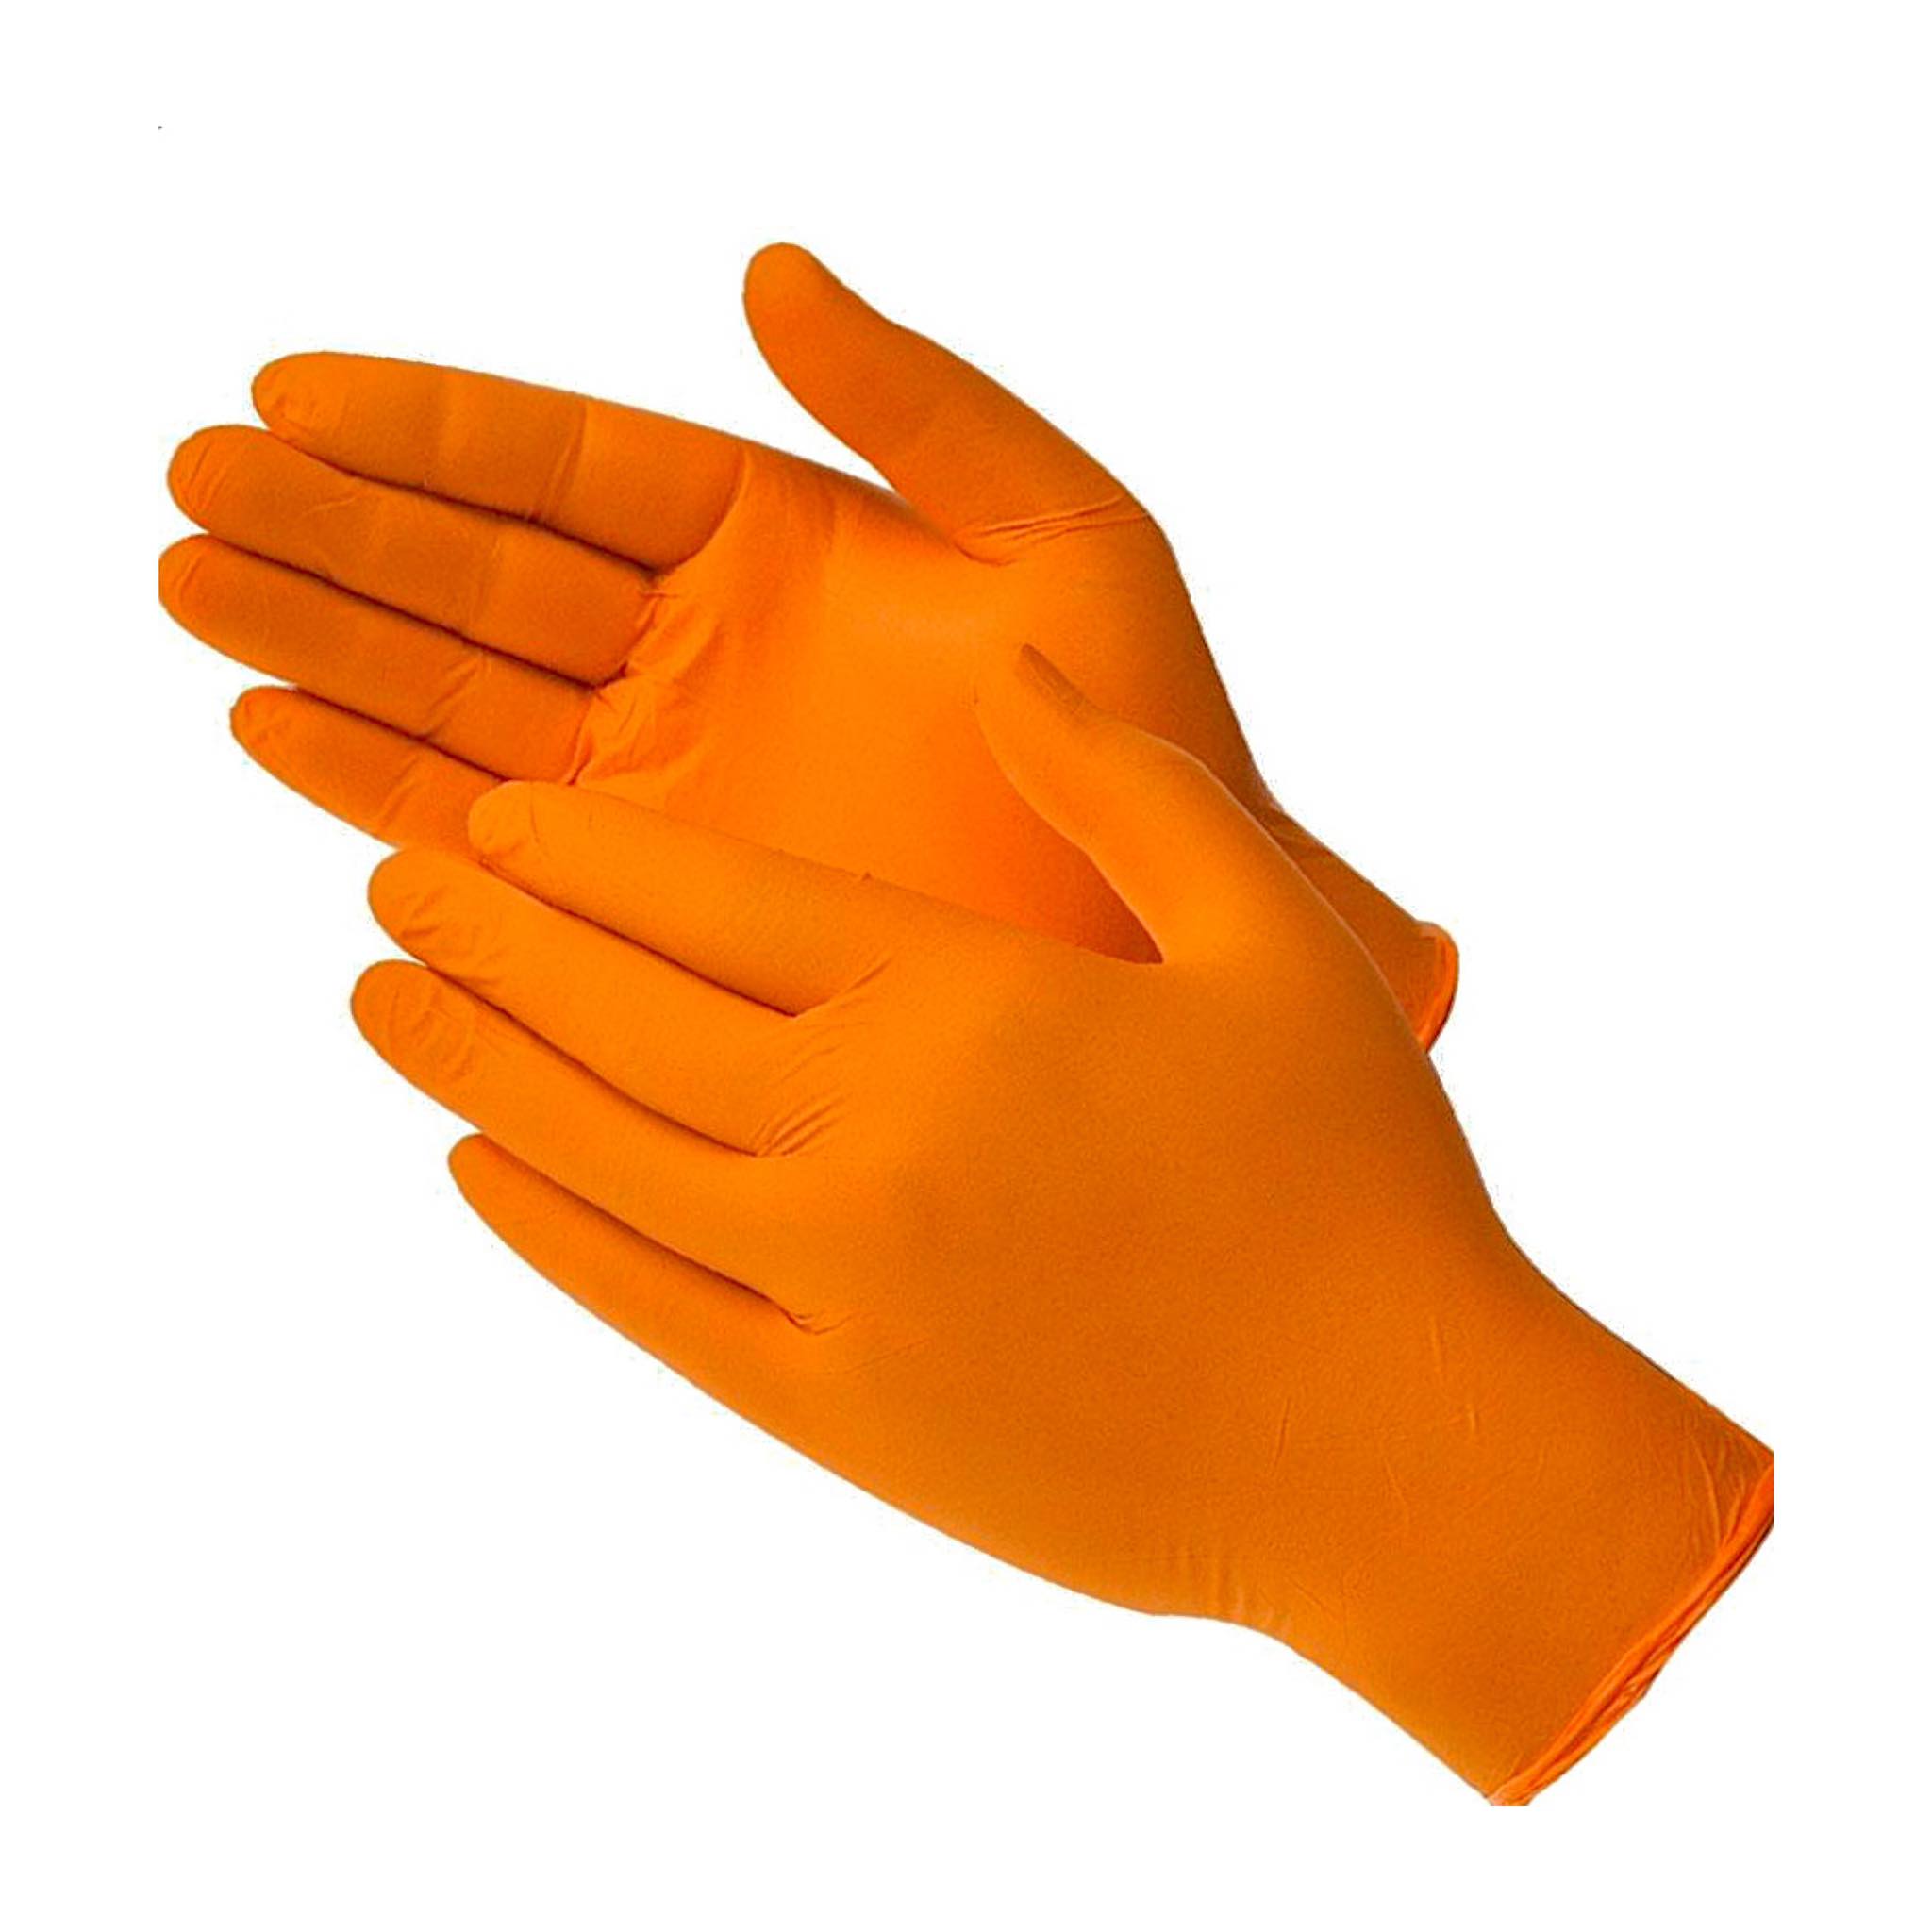 Купить перчатки l. Перчатки Orange нитриловые. Перчатки нитрил оранжевые. Перчатки оранжевые одноразовые нитрил. Перчатки резиновые оранжевые.